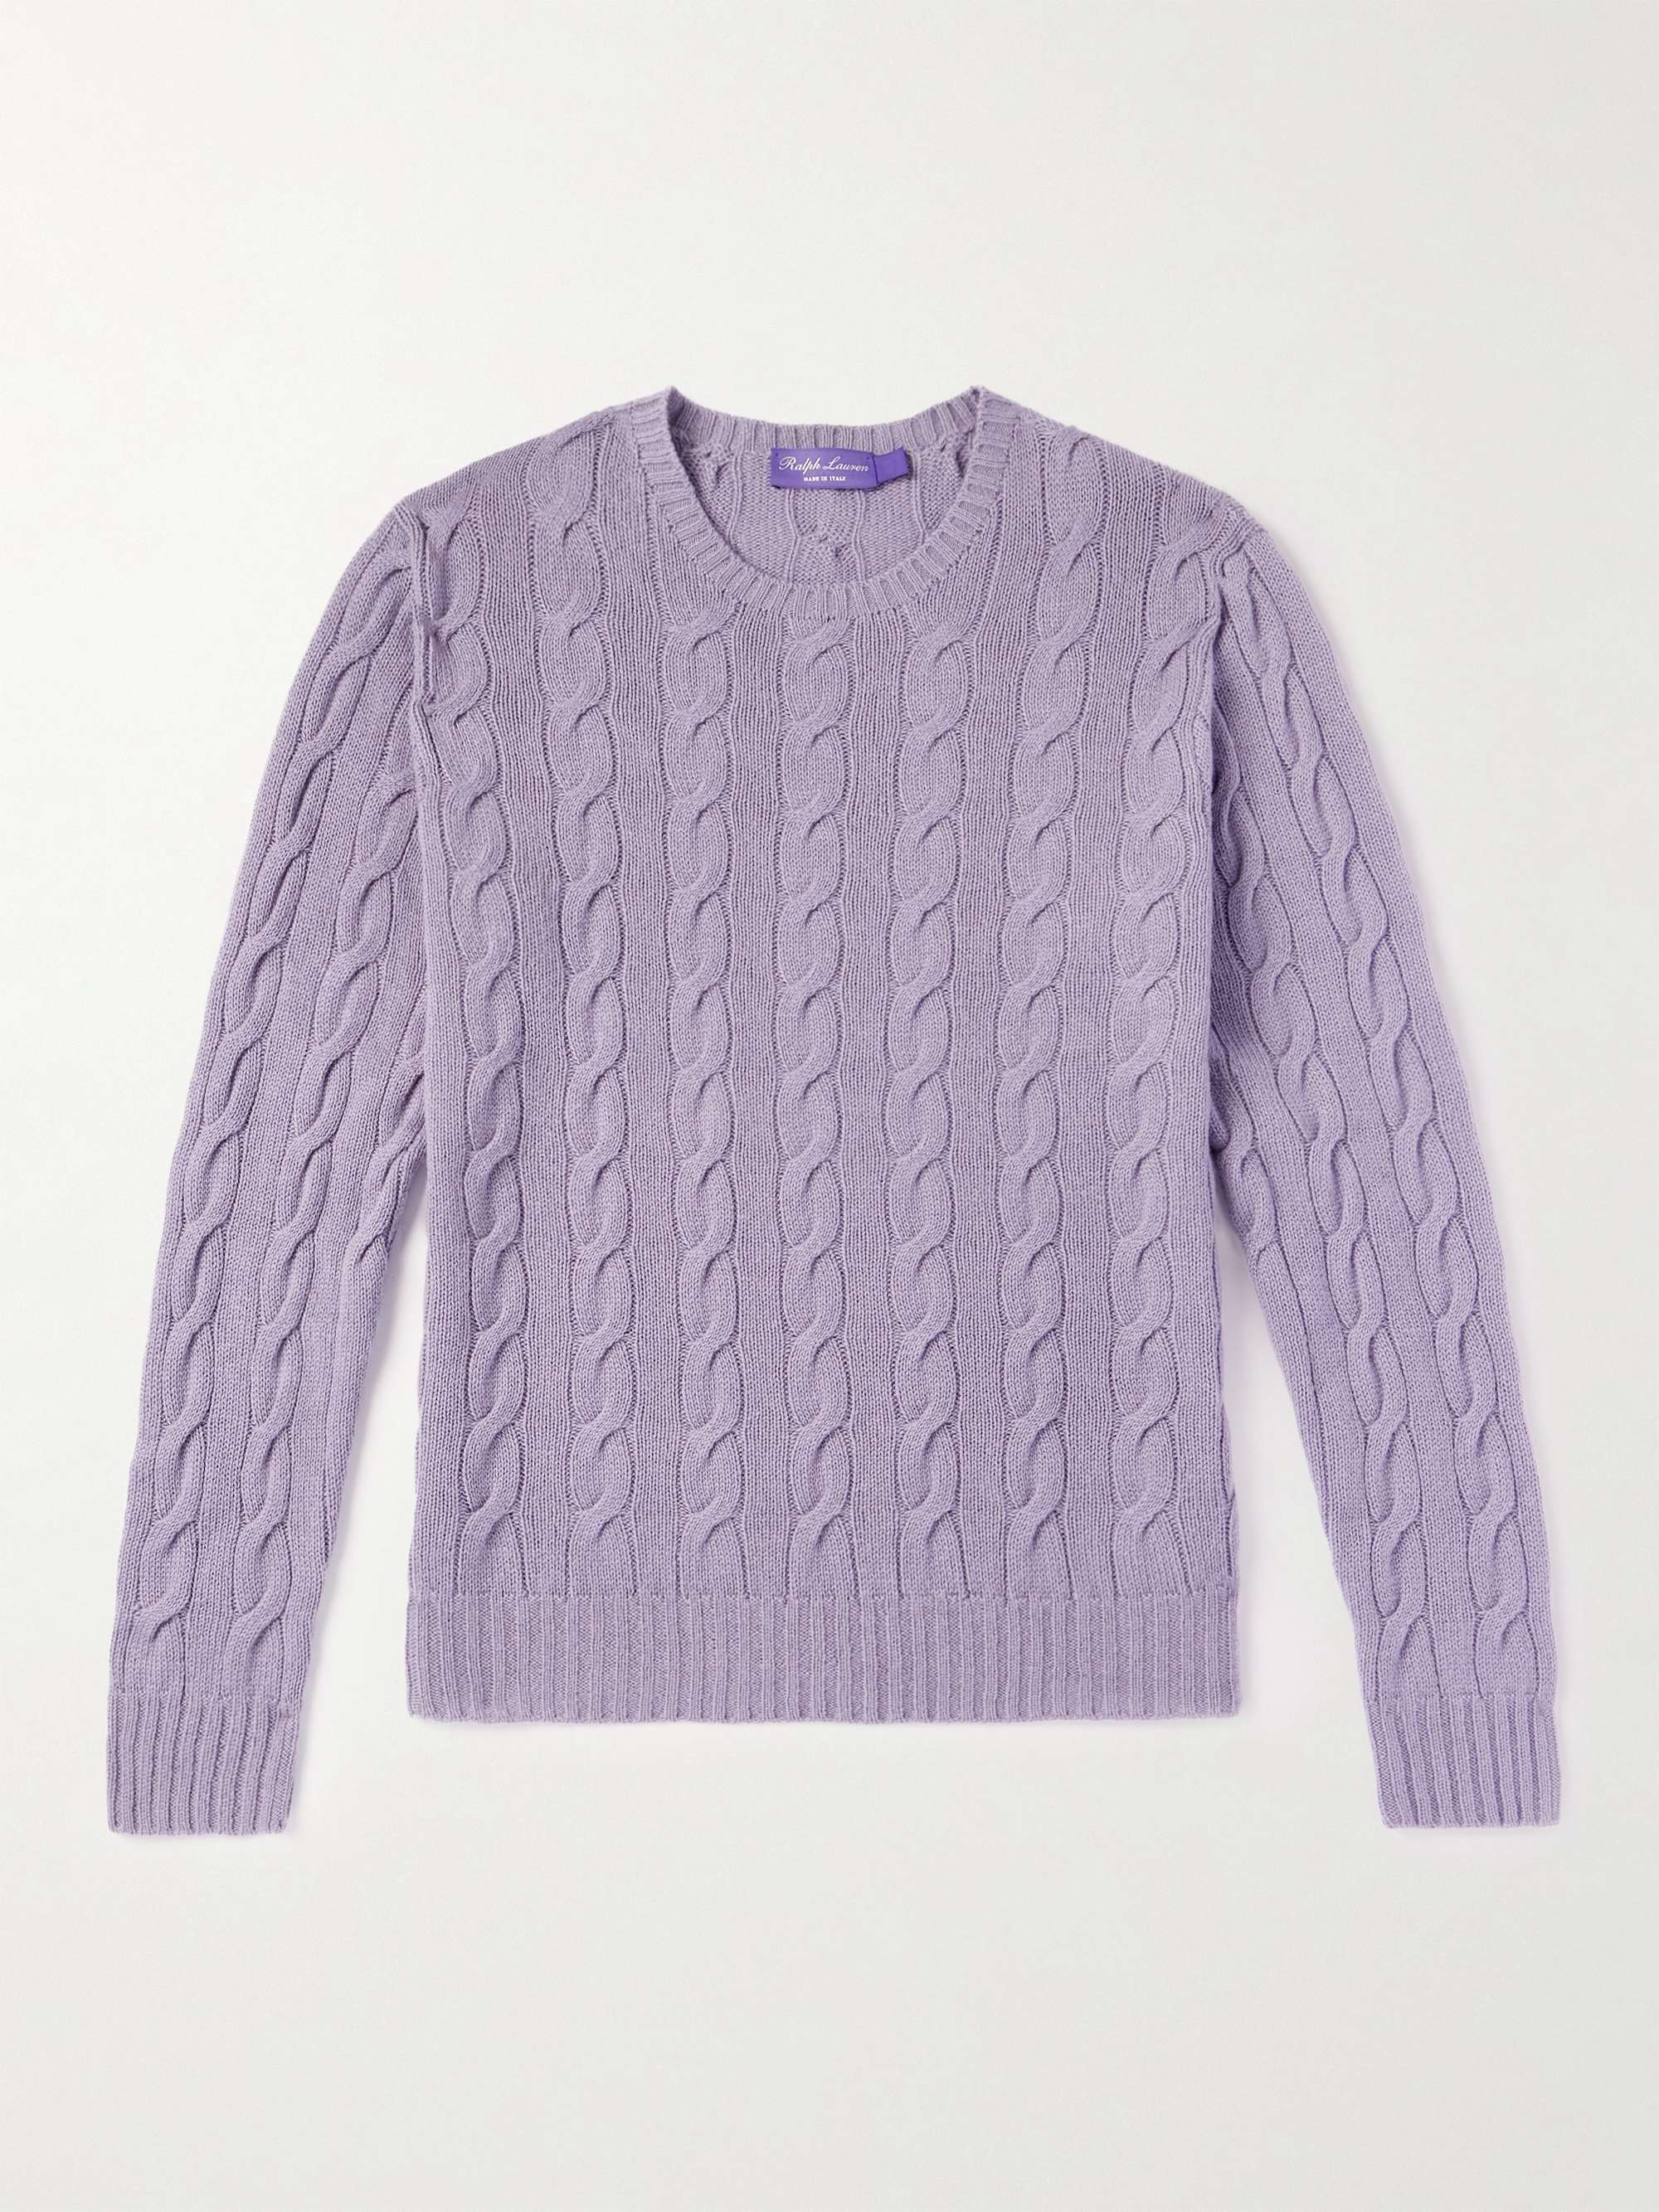 RALPH LAUREN PURPLE LABEL Cable-Knit Cashmere Sweater for Men | MR PORTER